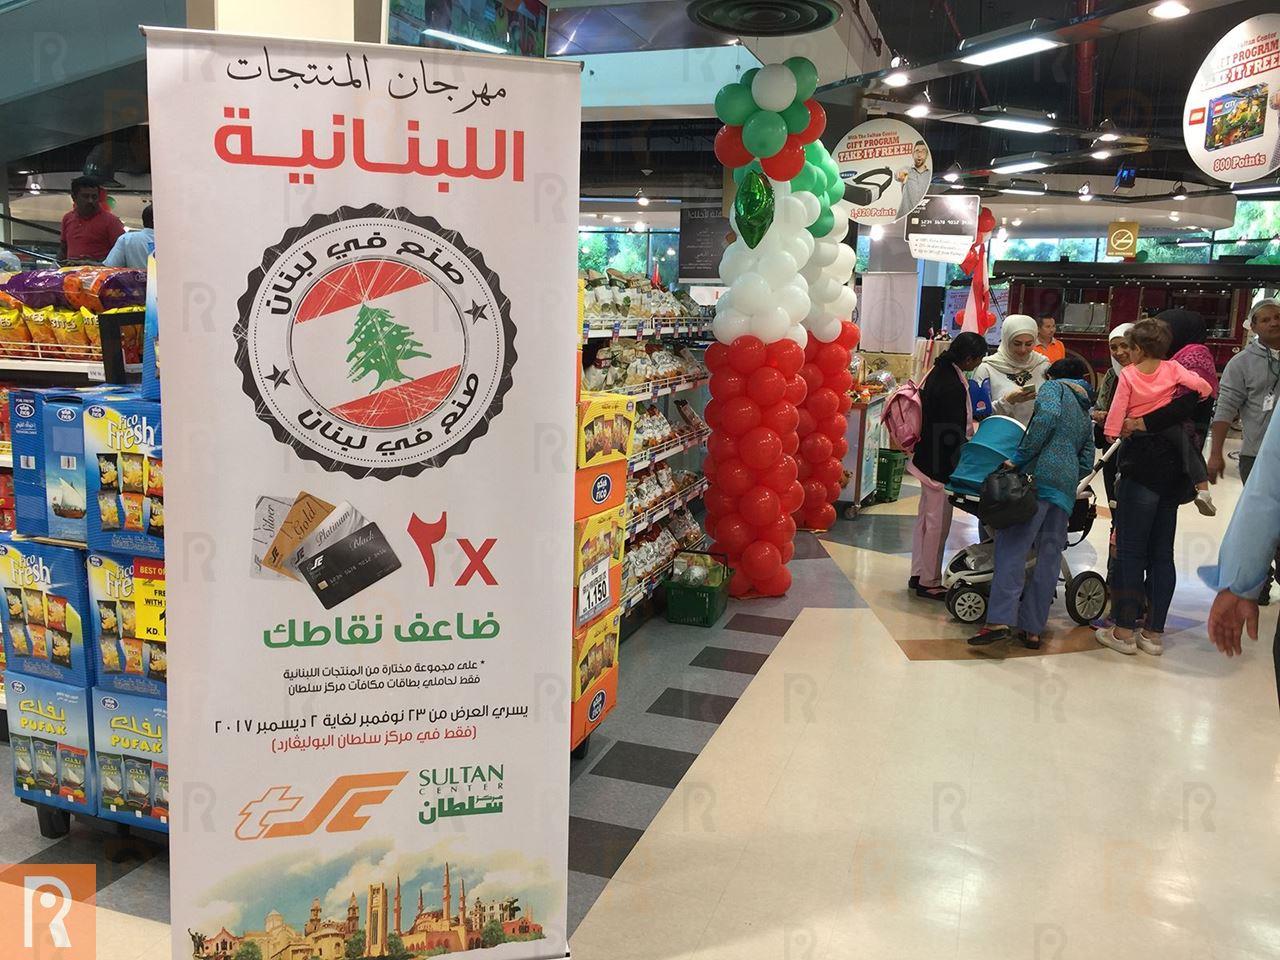 بالصور.. مهرجان المنتجات اللبنانية في مركز سلطان فرع البوليفارد